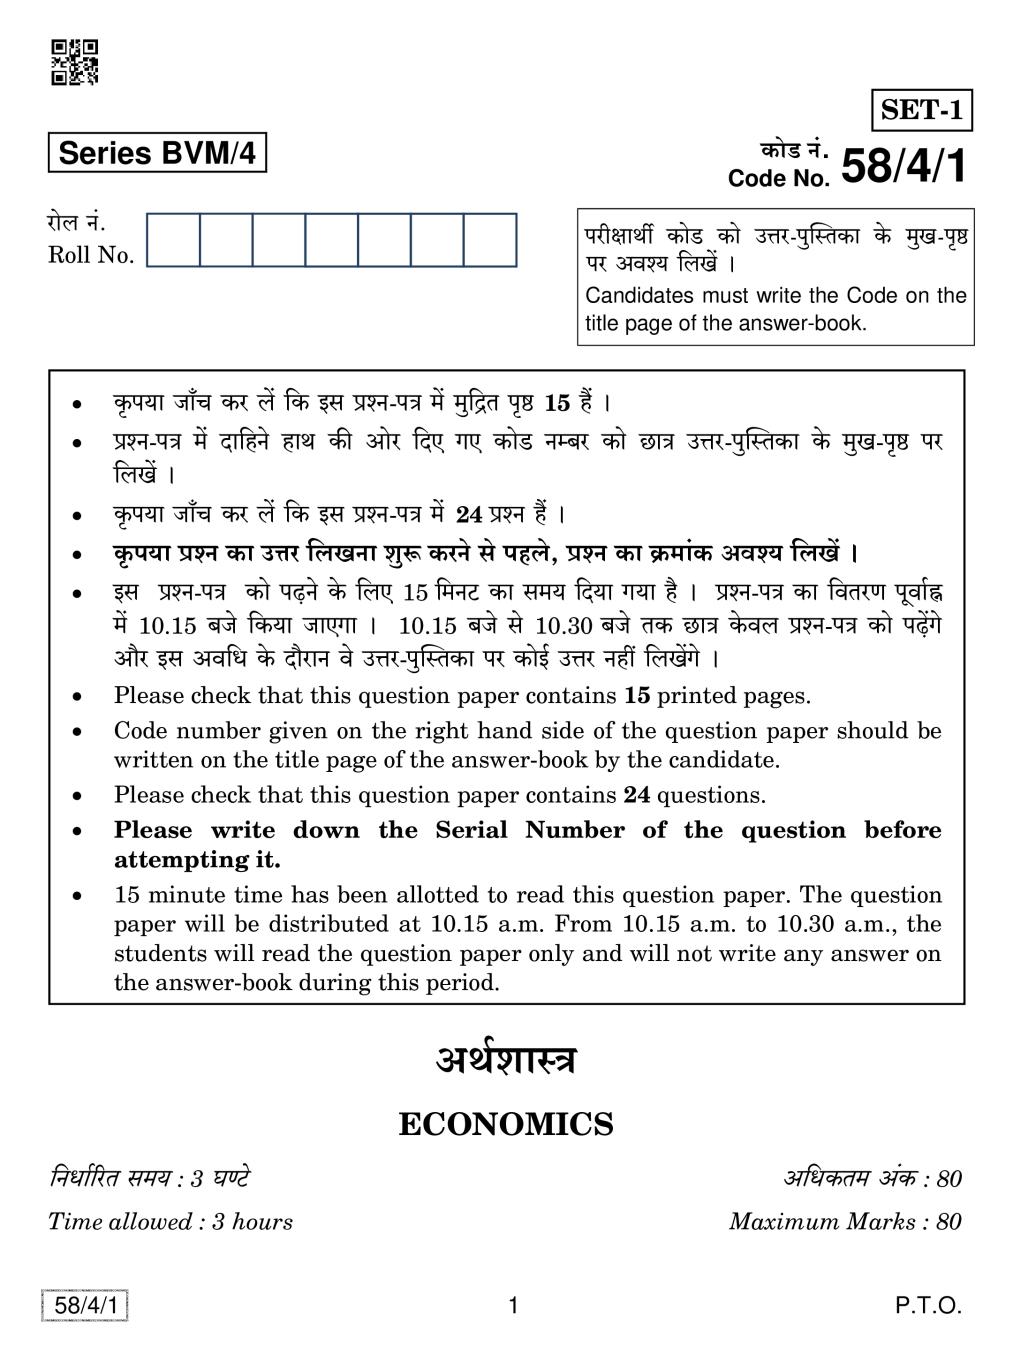 CBSE Class 12 Economics Question Paper 2019 Set 4 - Page 1